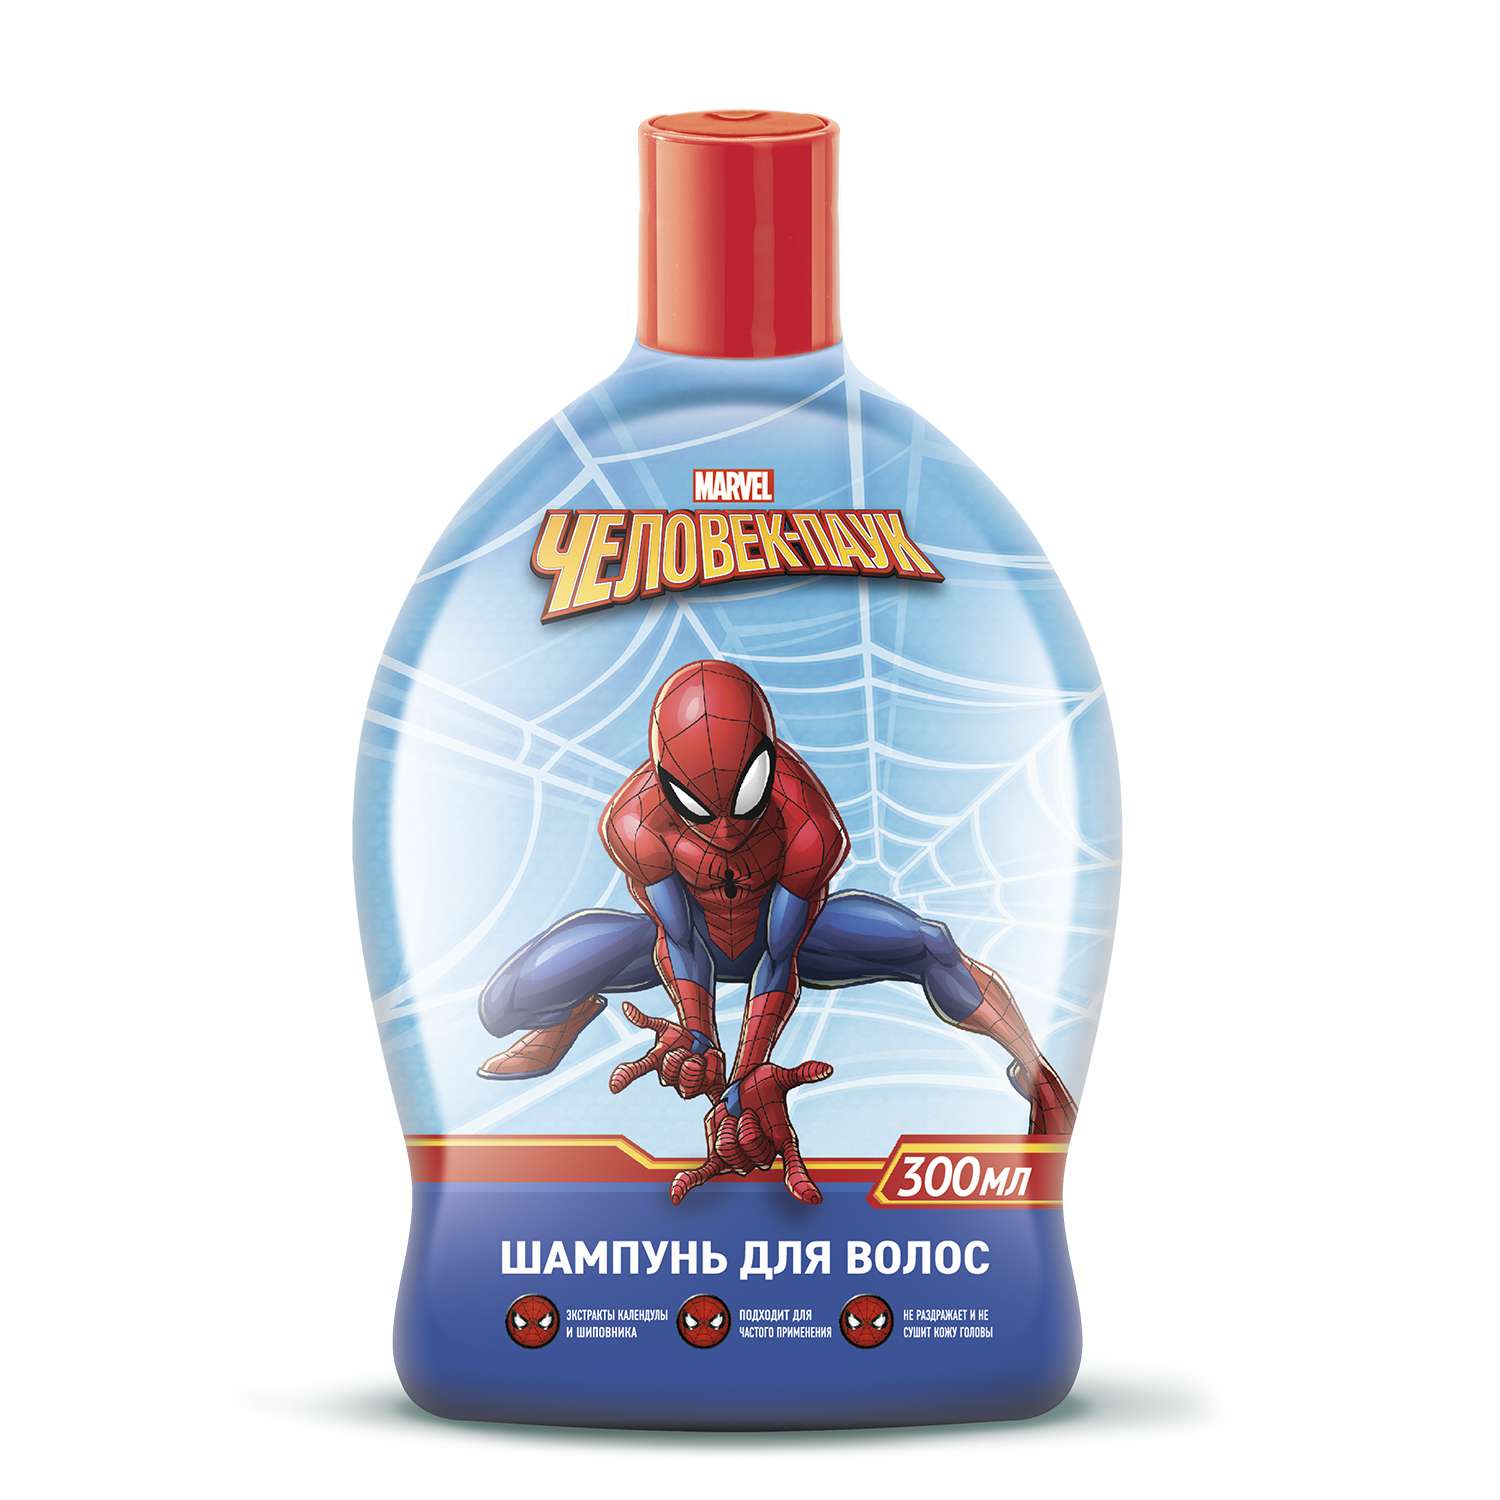 Набор подарочный Человек-Паук (Spider-man) шампунь 300мл+гель для душа 300мл 34931 - фото 4